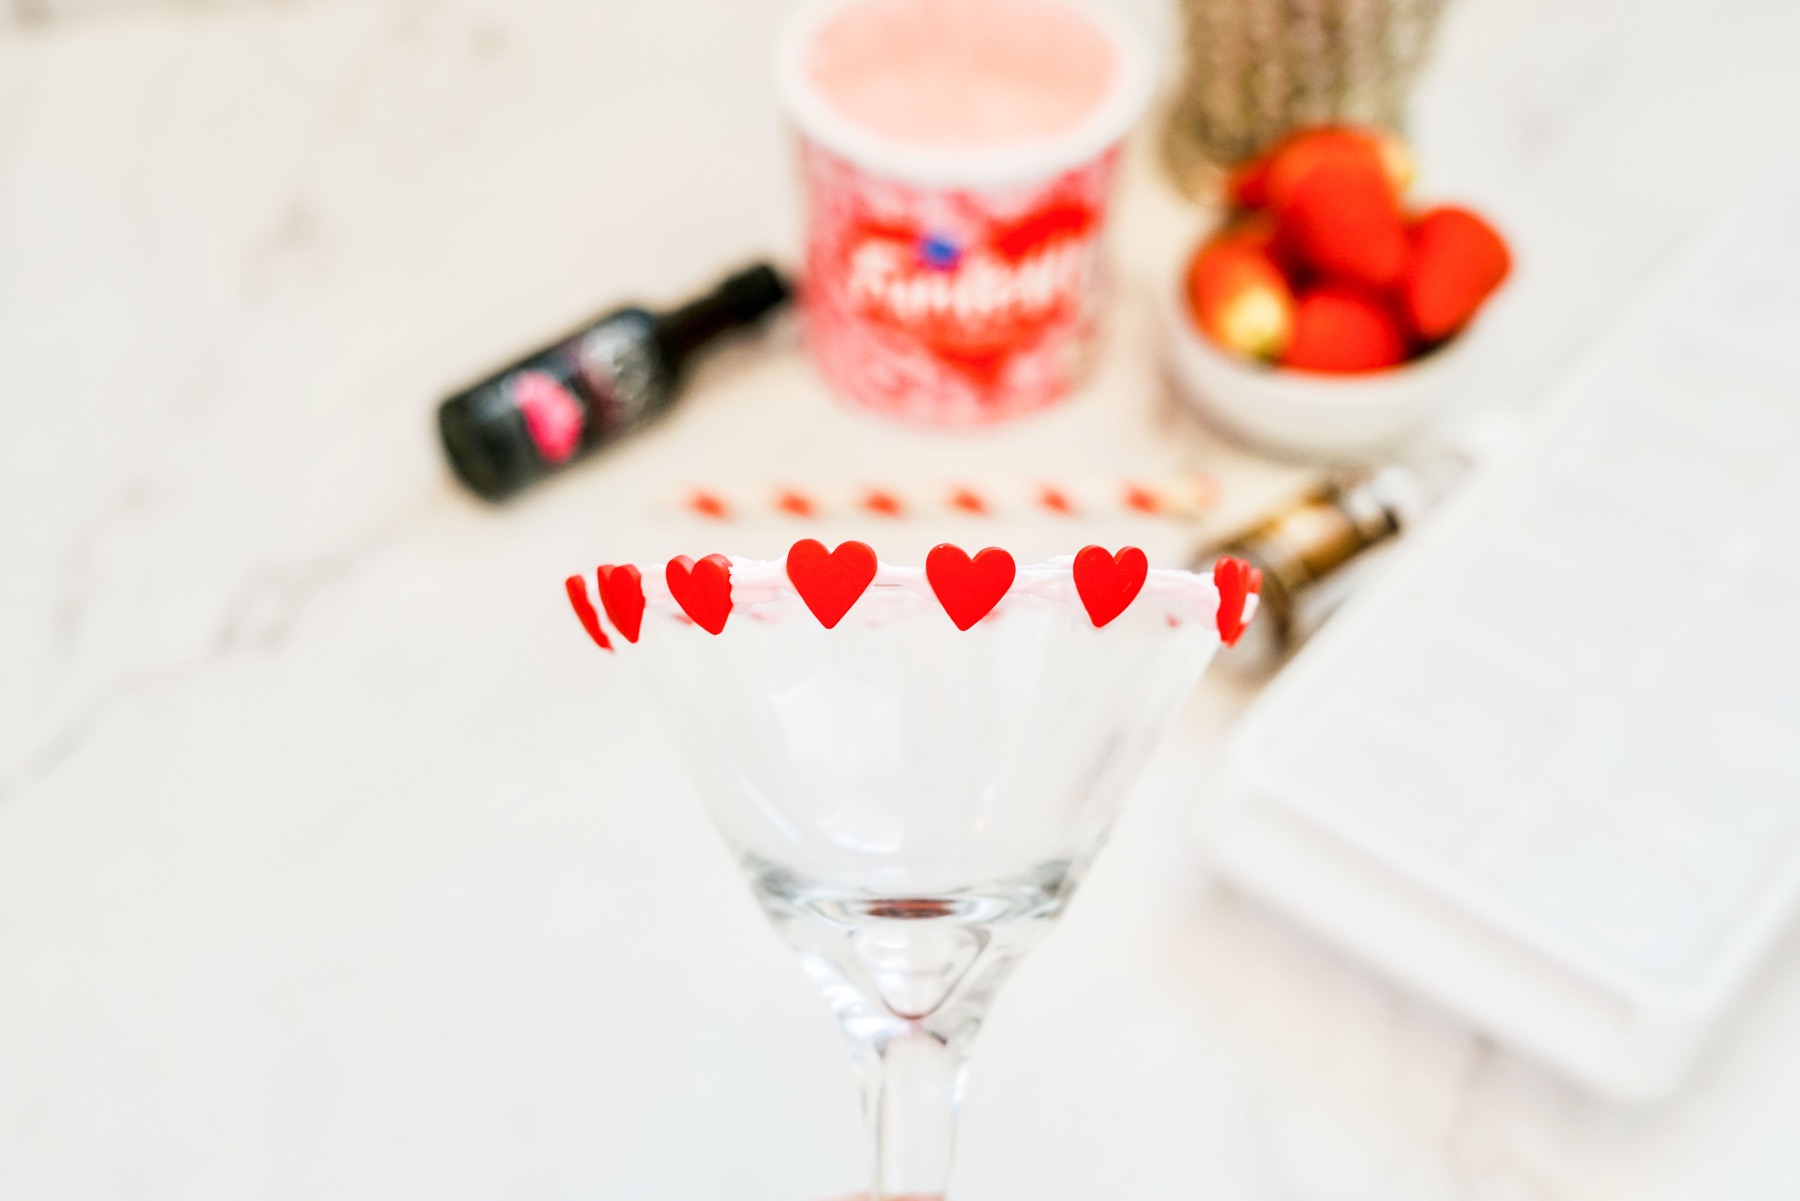 add valentine sprinkles to the glass